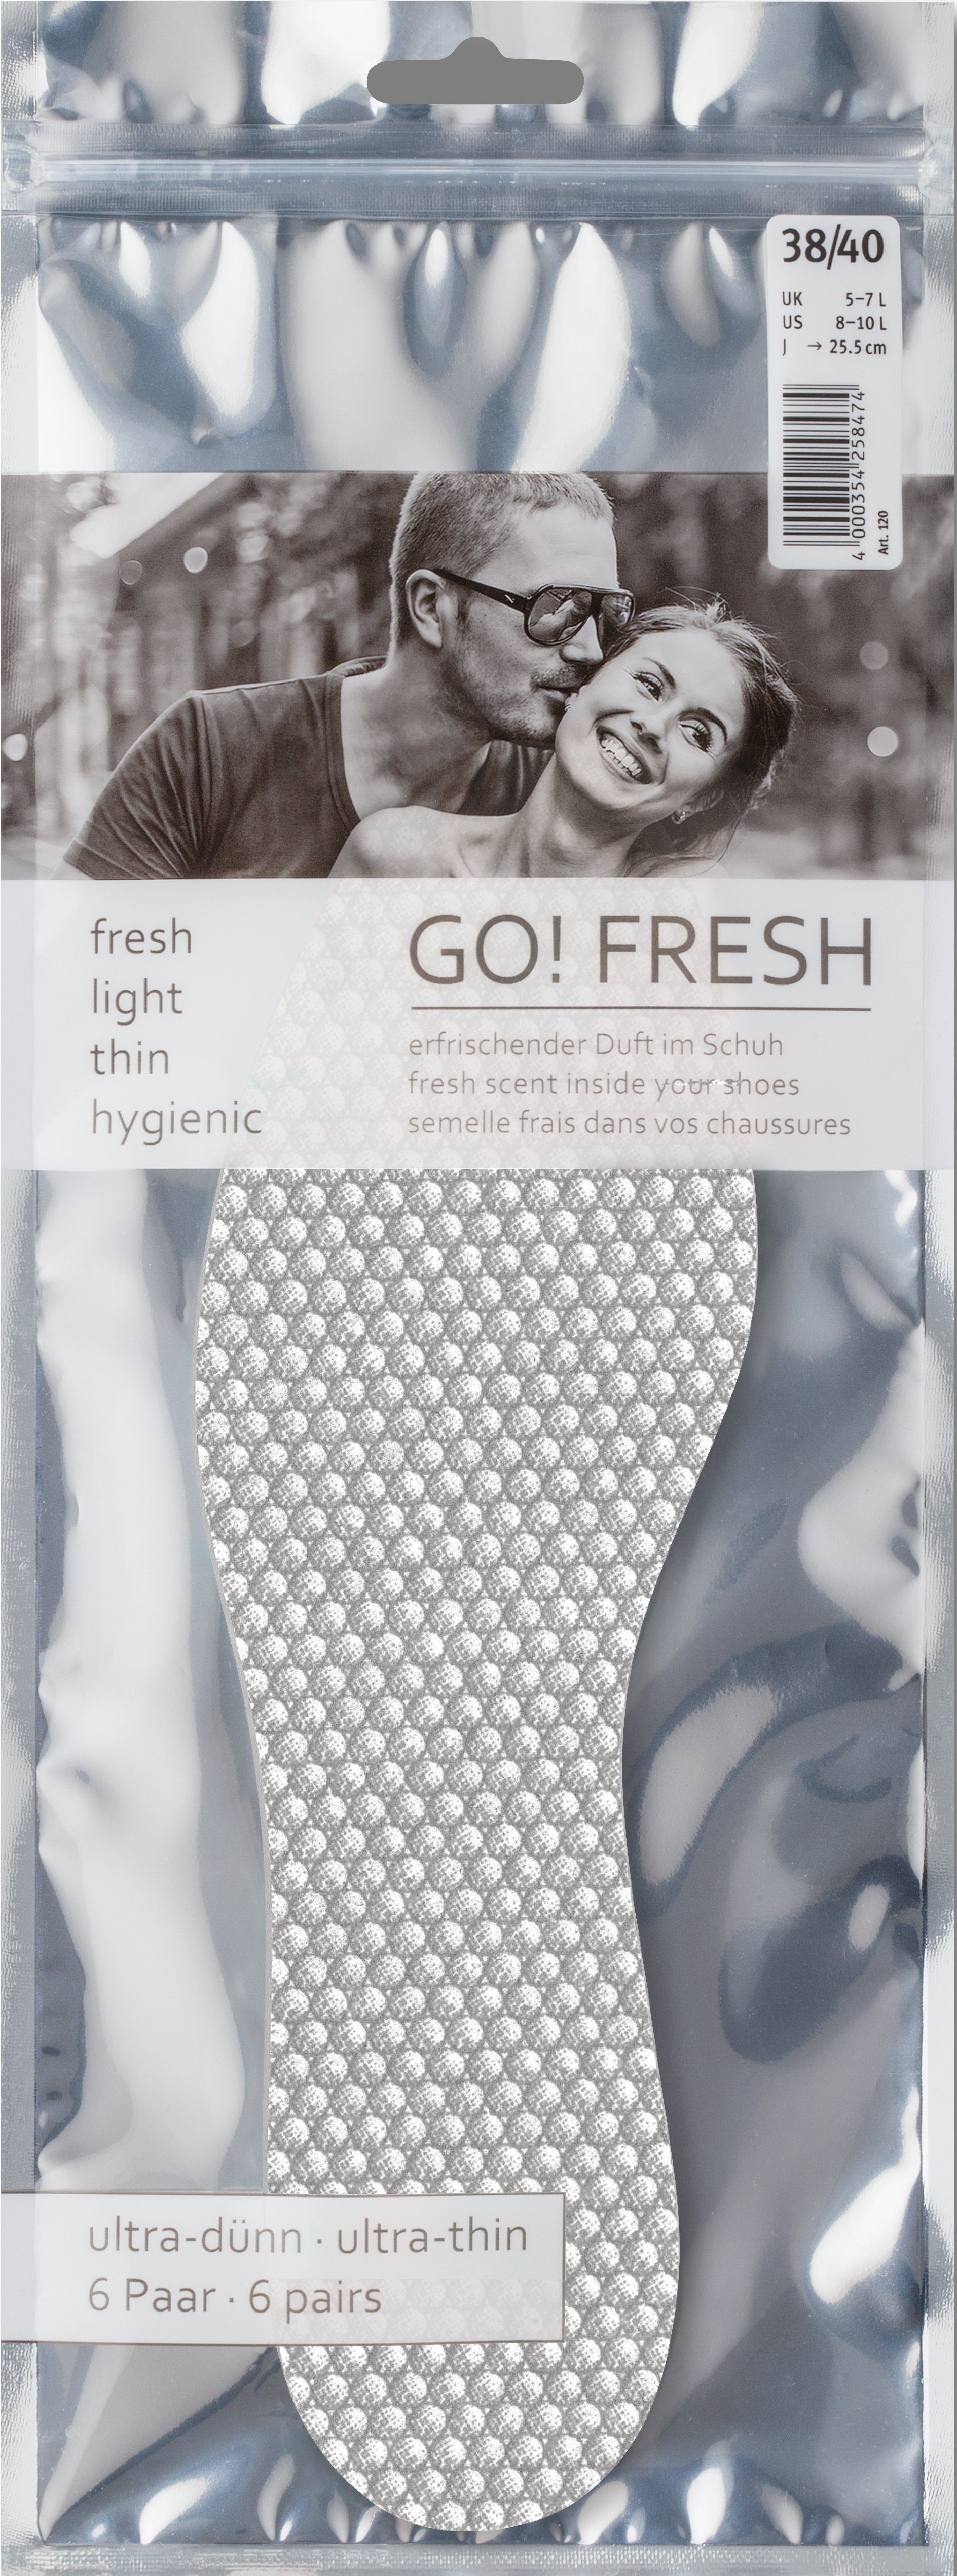 GO! Frischesohlen Fresh Ultra-dünne - Hygiene-Sohlen Pedag